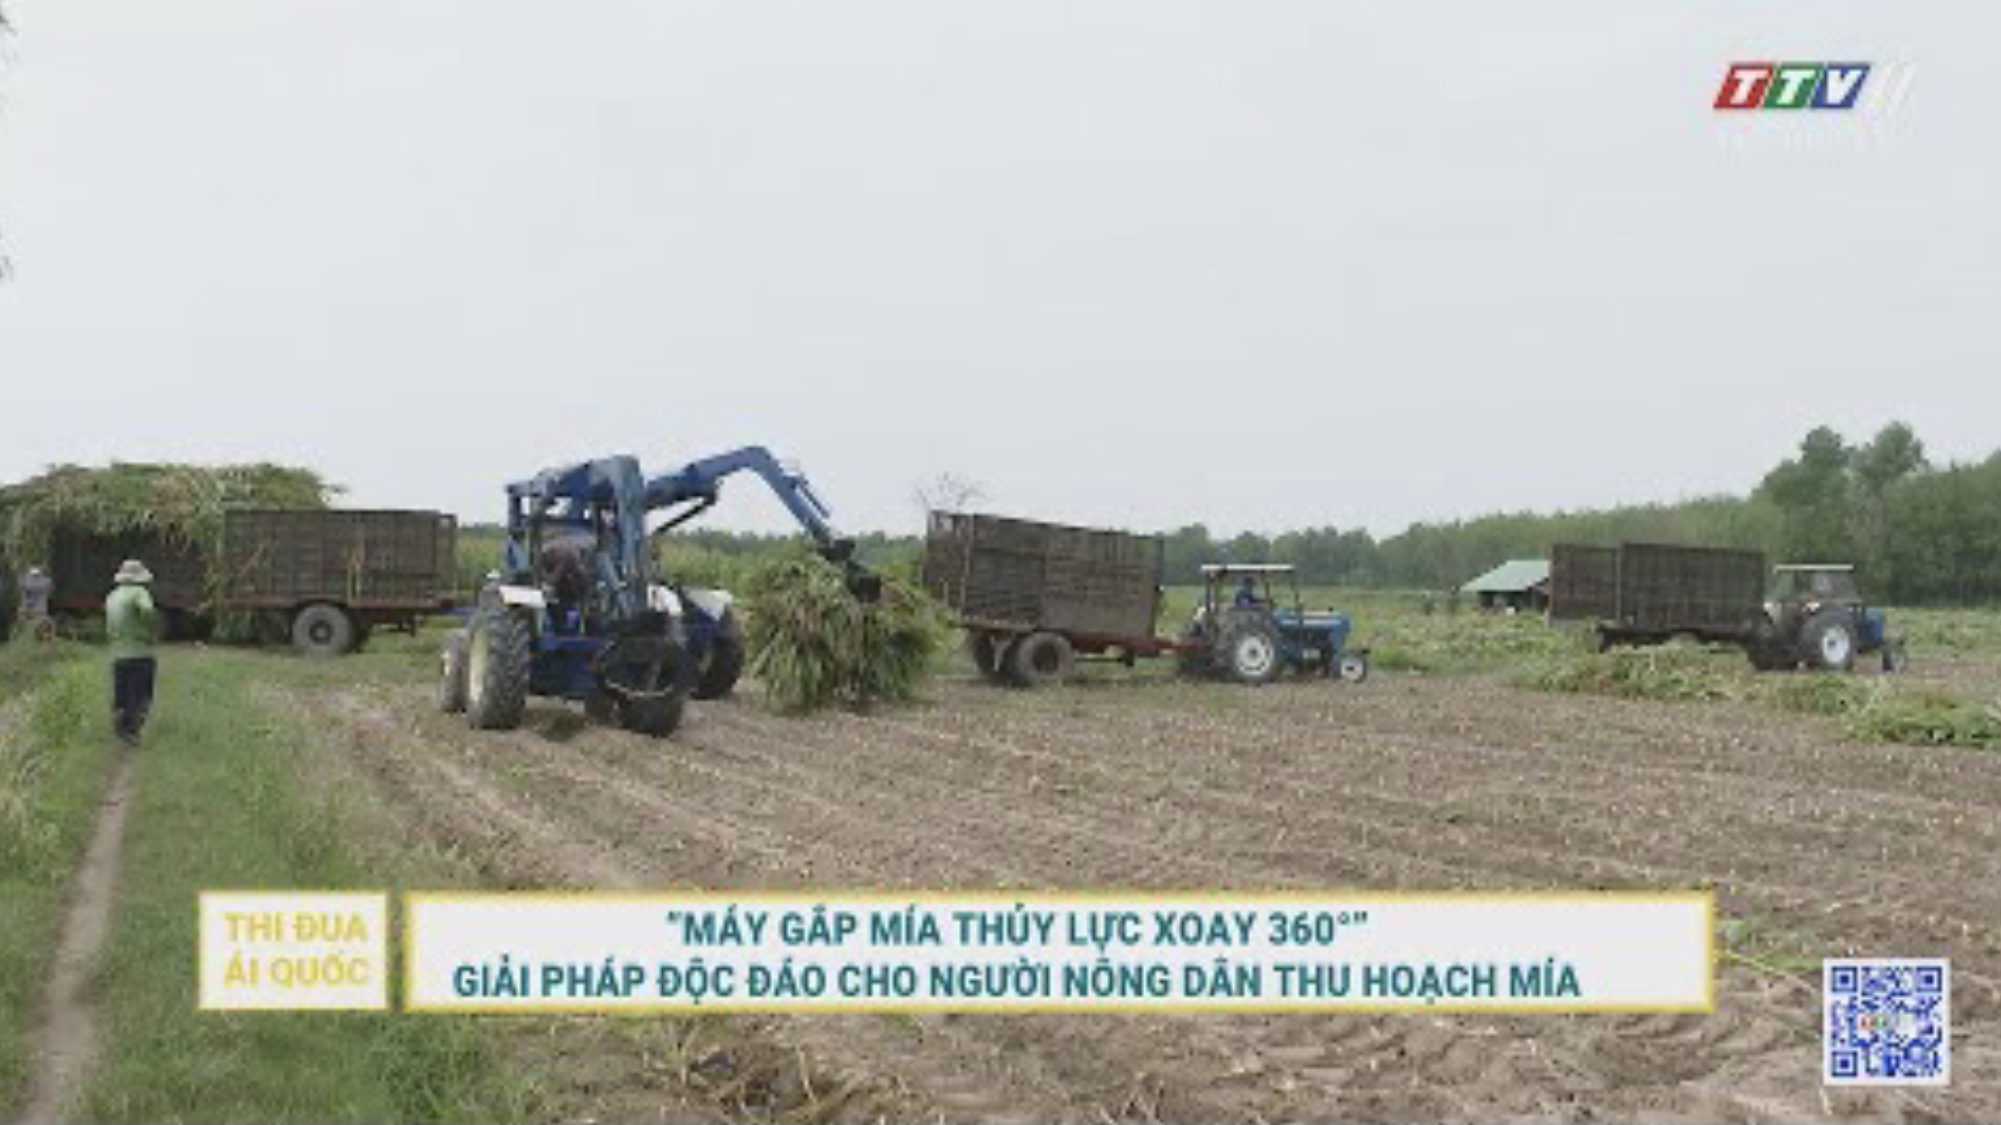 Máy gắp mía thủy lực xoay 360 độ. Giải pháp độc đáo cho người nông dân thu hoạch mía | TayNinhTV